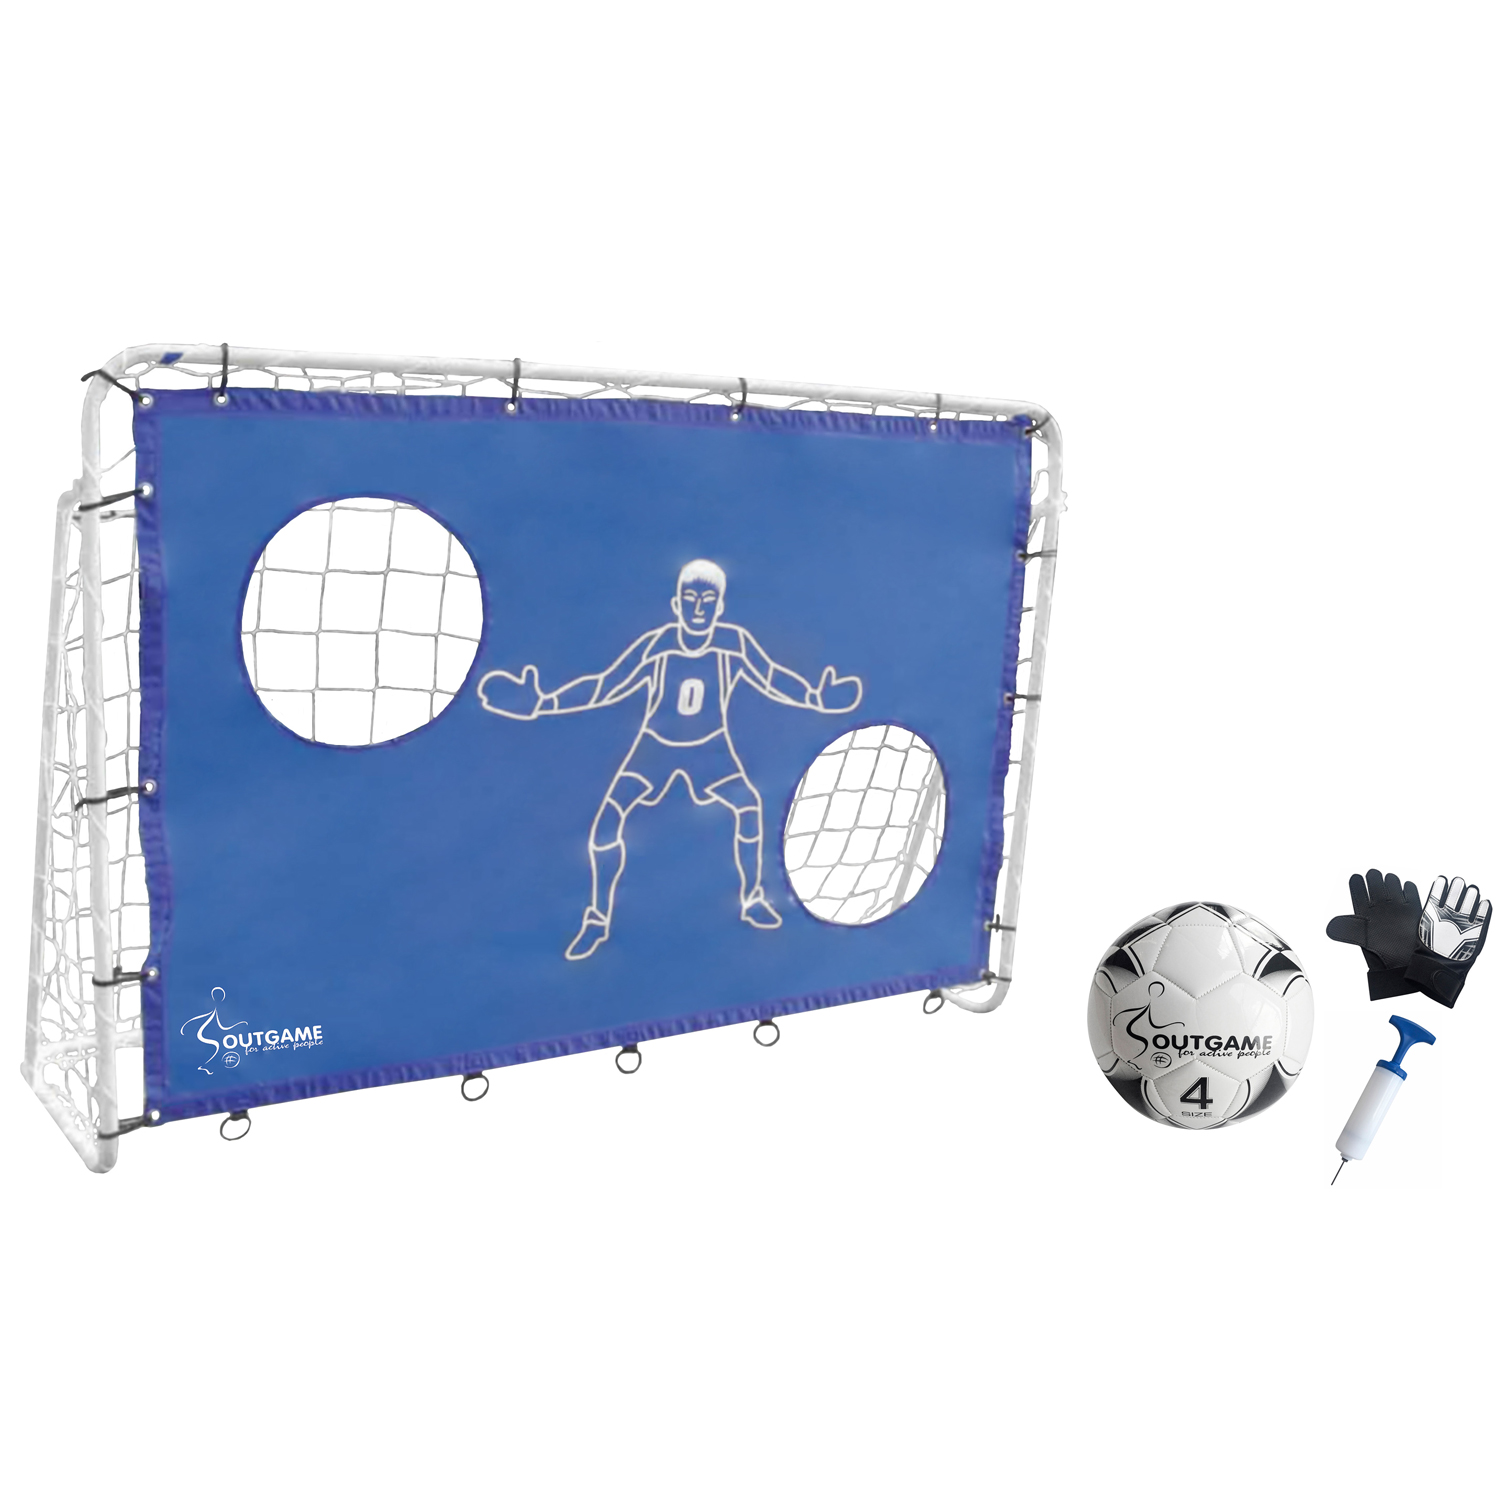 Outgame Fotbollsmål 183x122cm - Komplett med fotboll, handskar